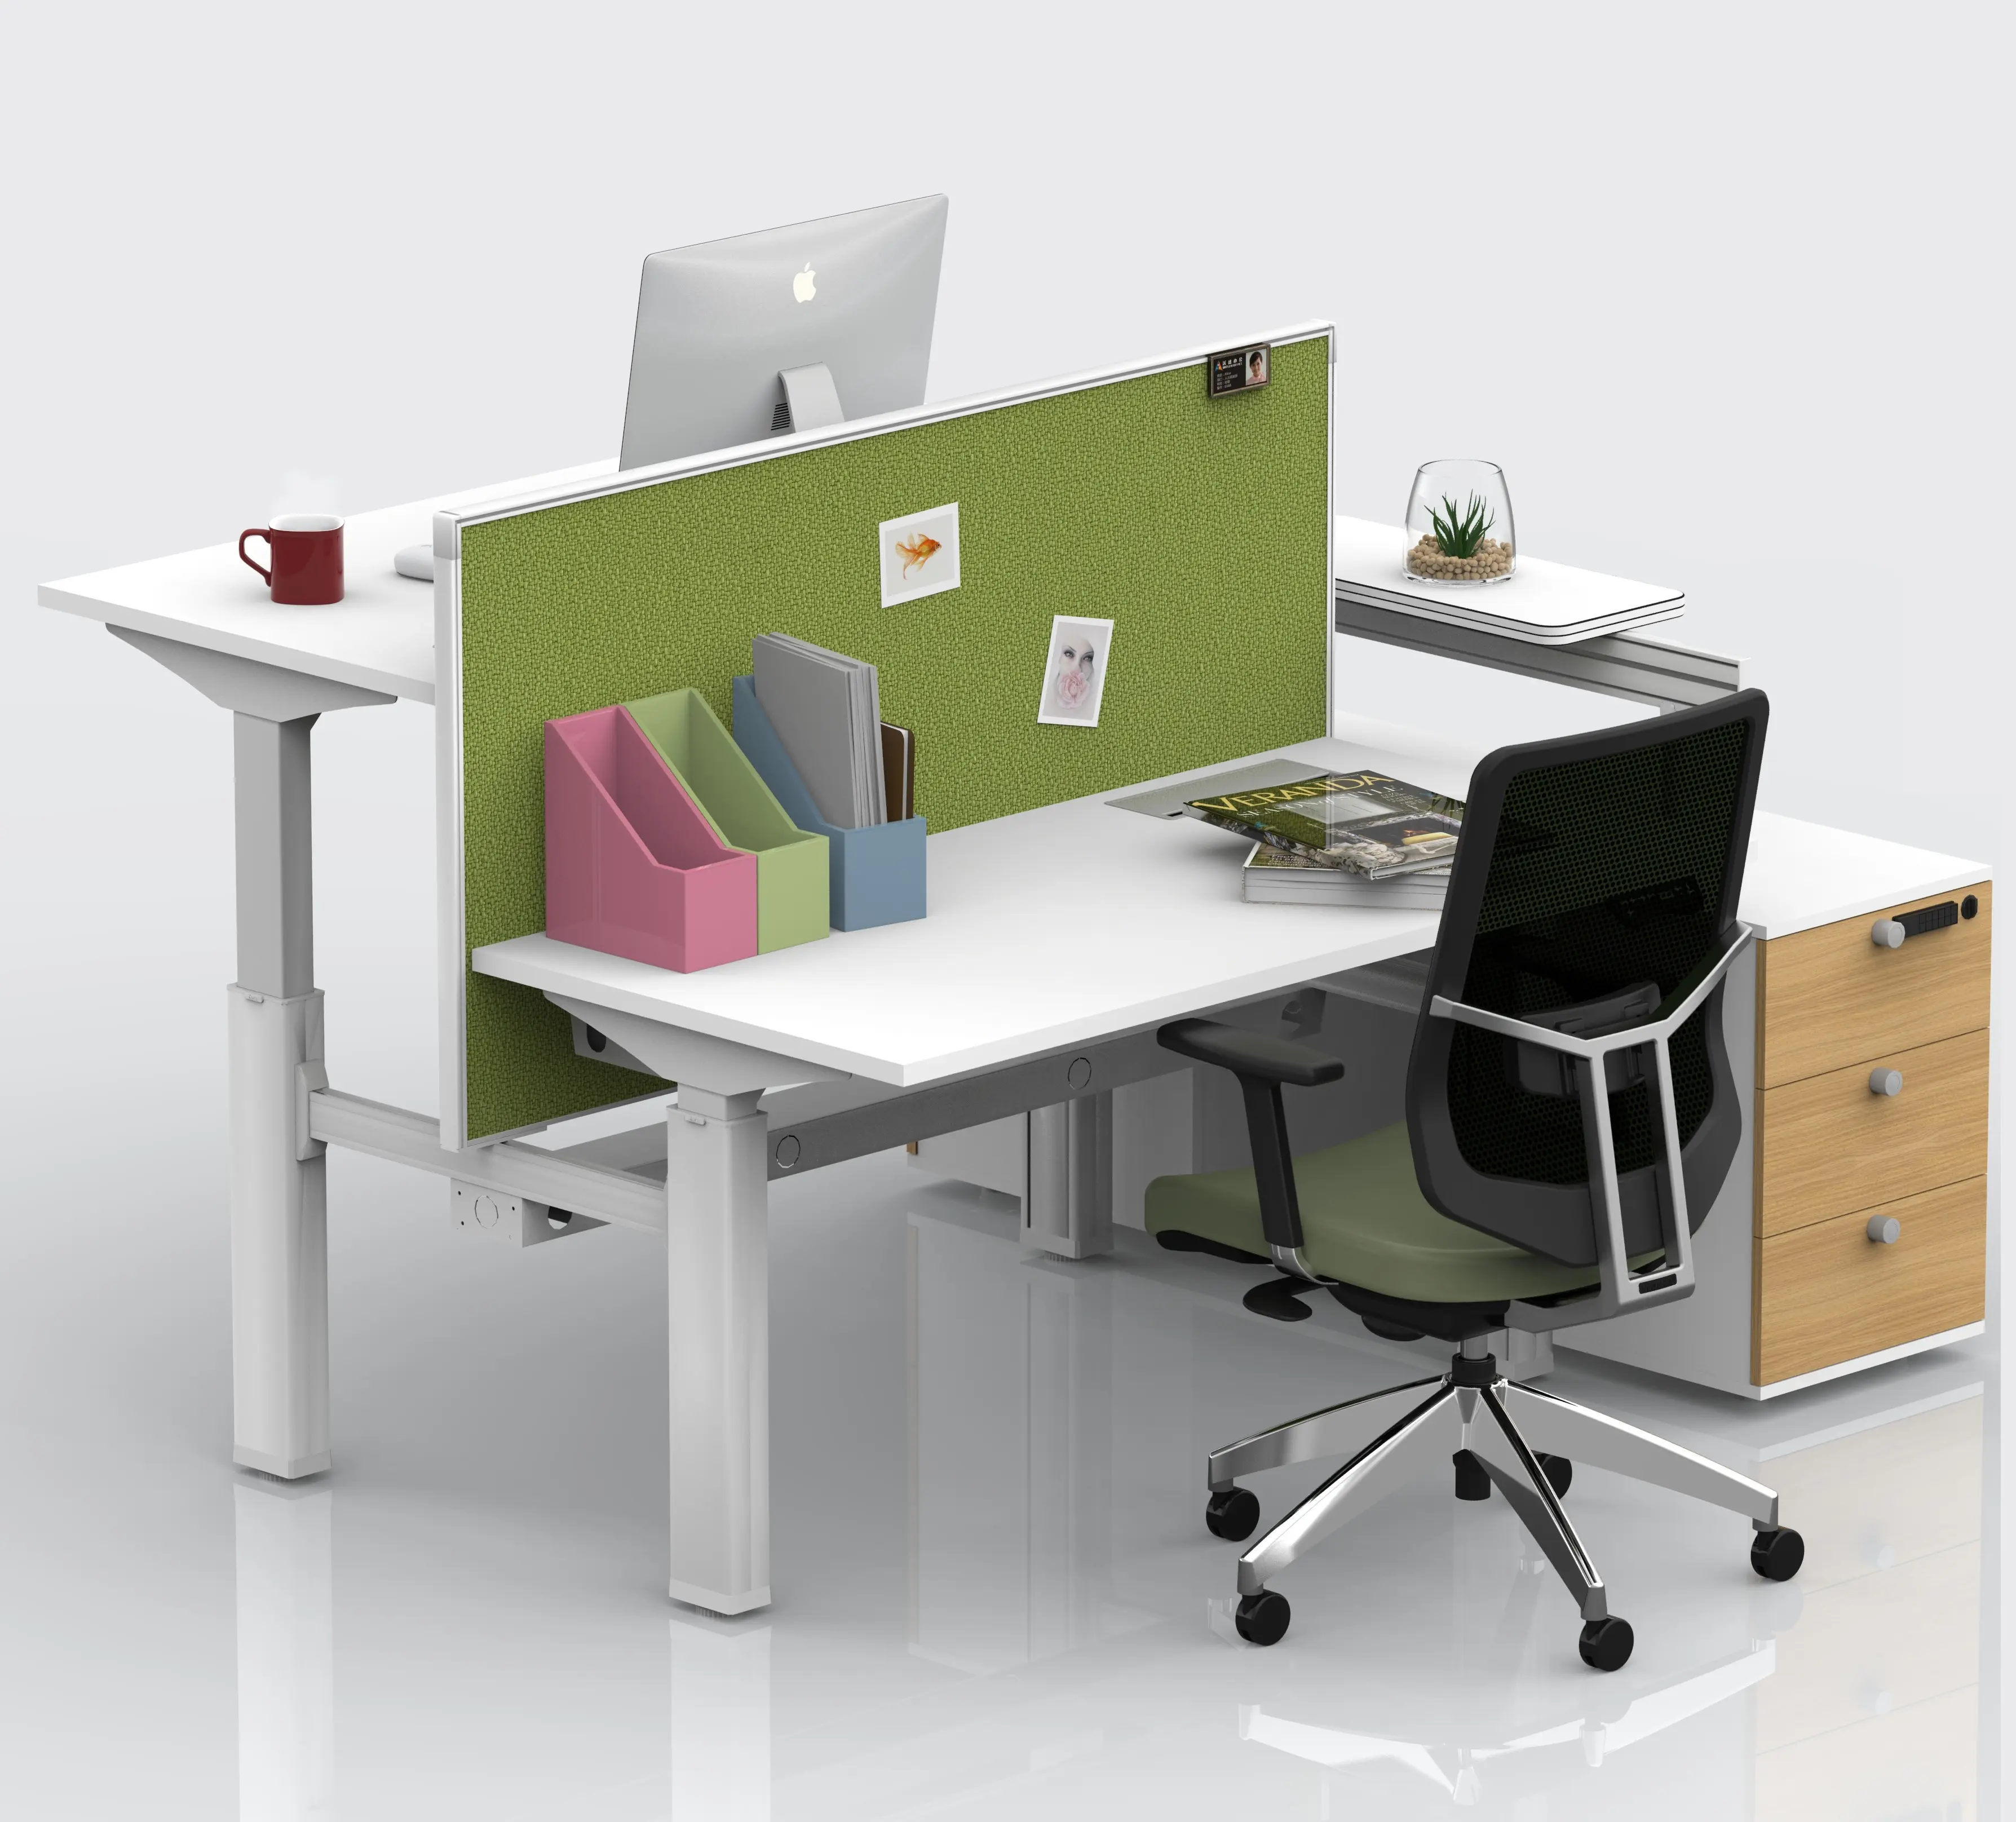 Jx1 mesa de trabalho ajustável, altura elétrica, gerenciador inteligente, móveis, computador, escritório, partição de mesa, design de bicicleta